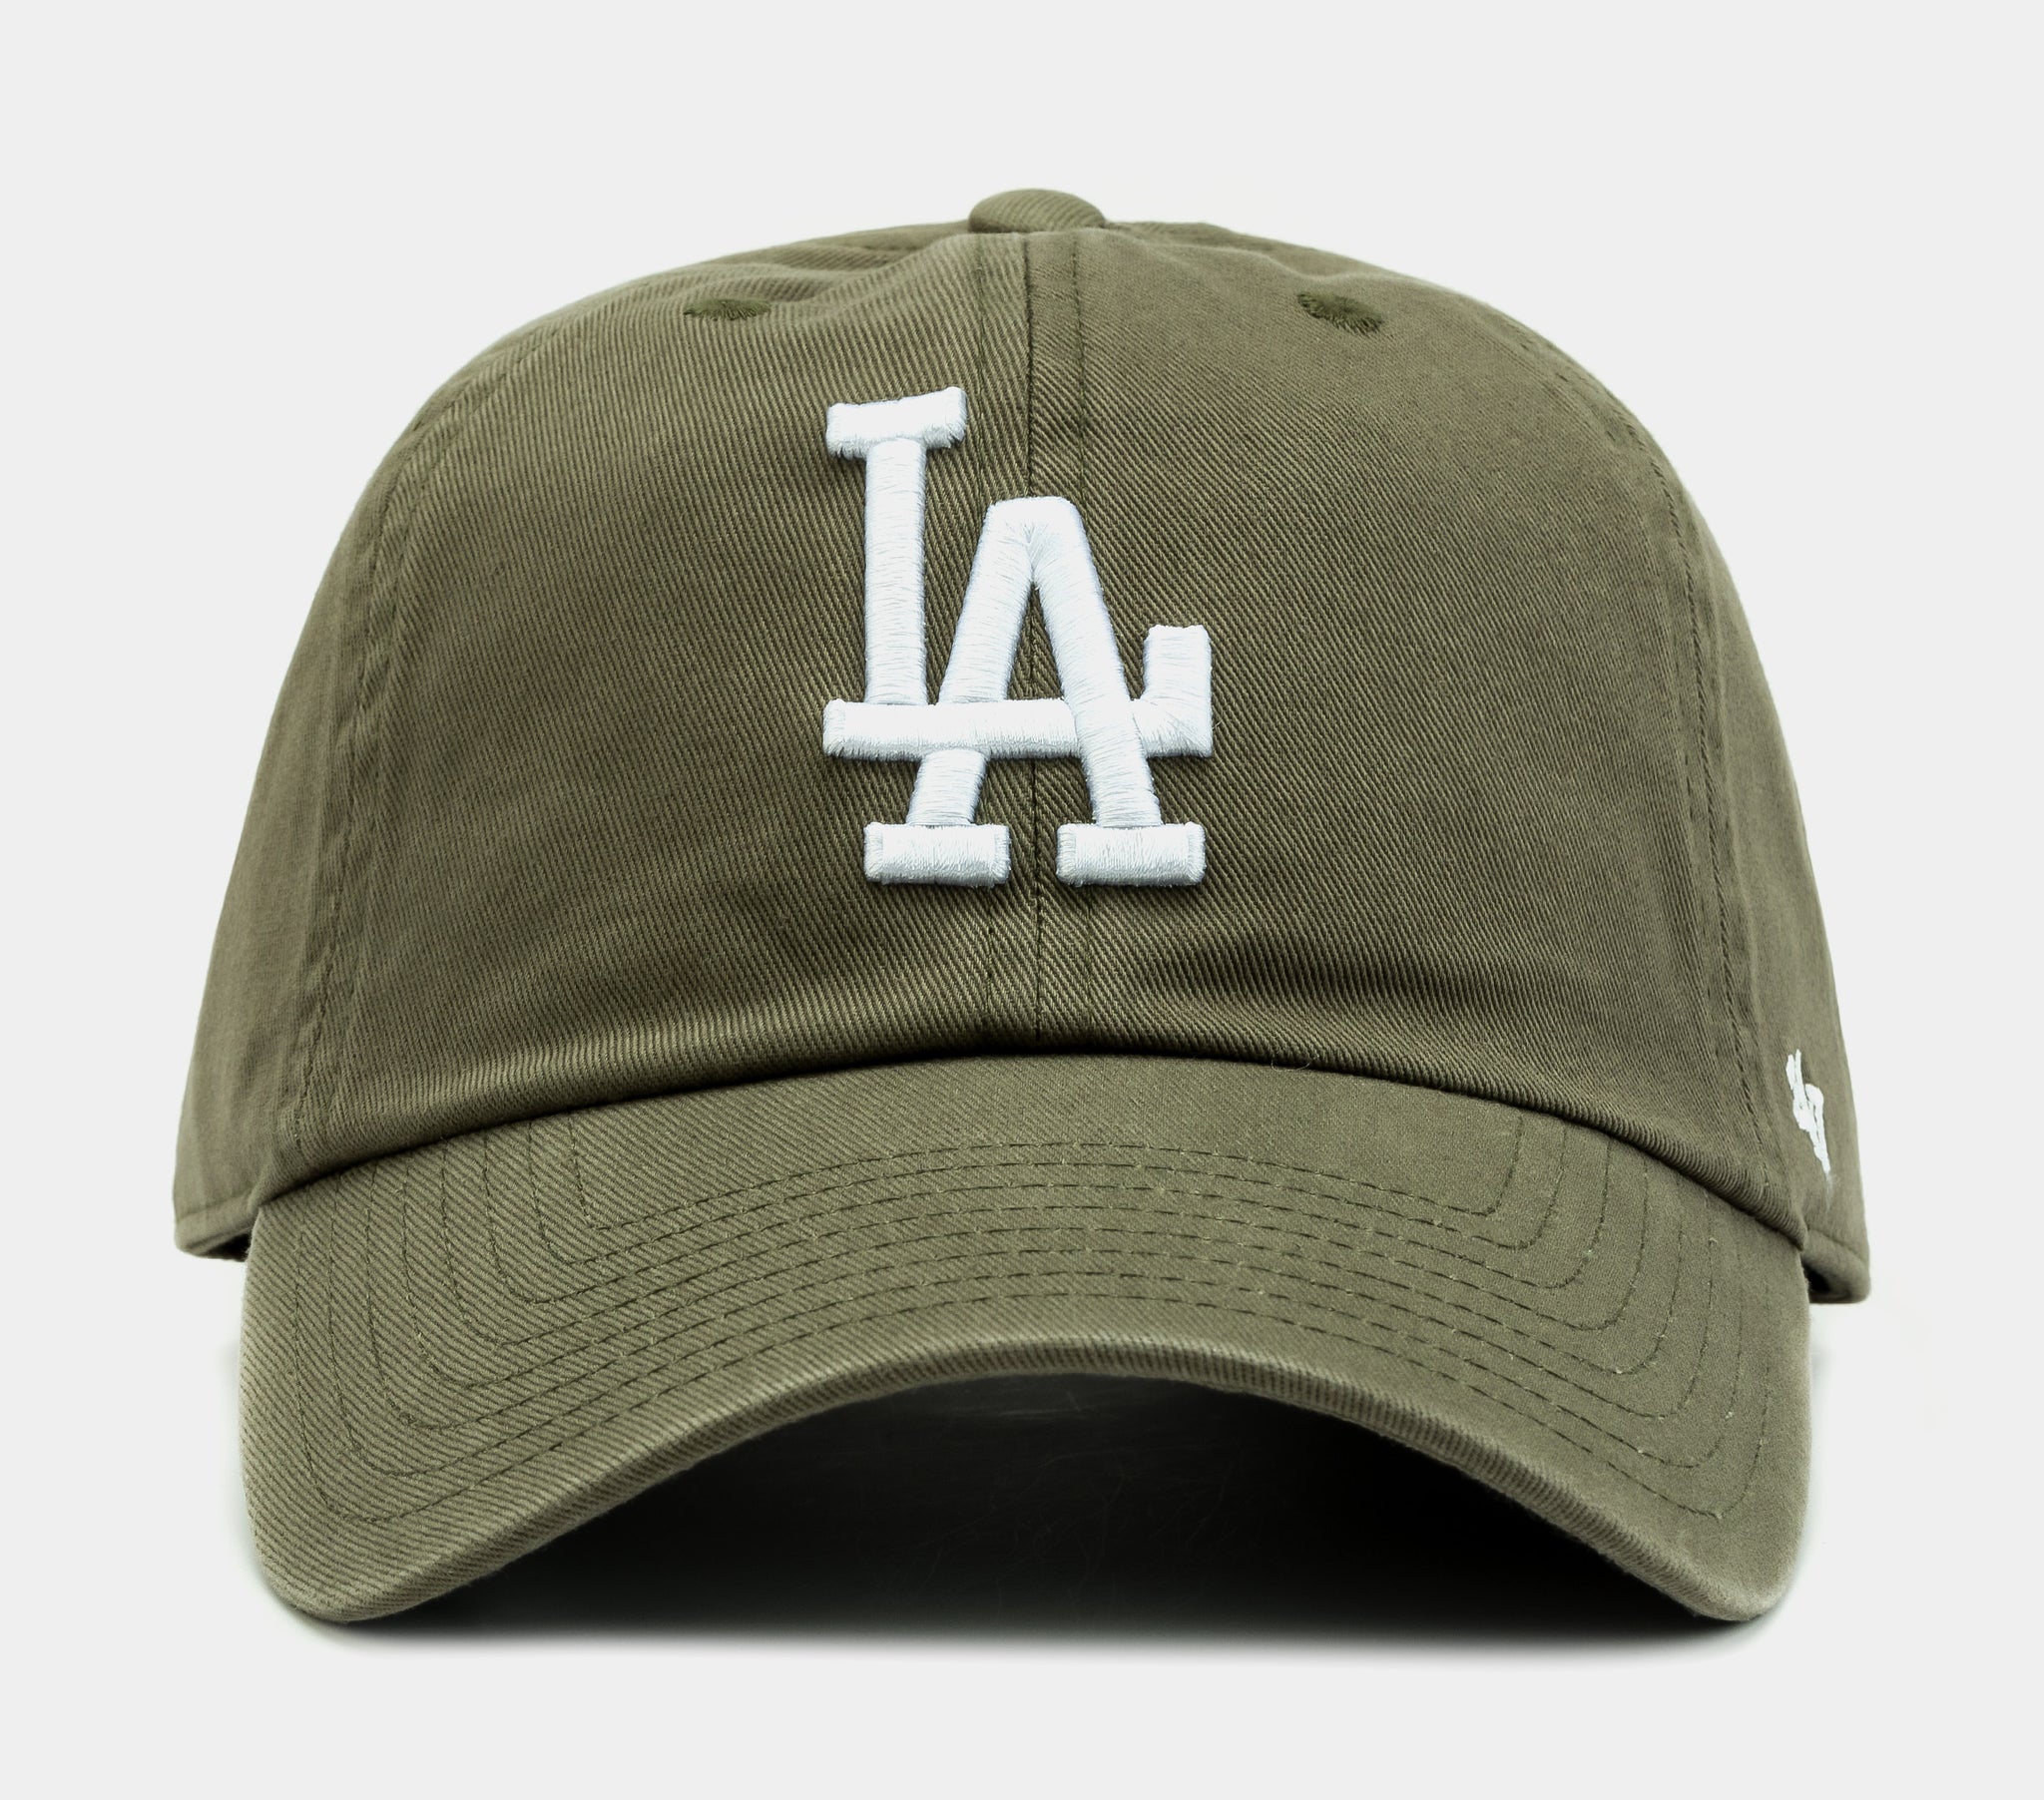 Los Angeles Dodgers Strapback '47 Brand Clean Up Gold Adjustable